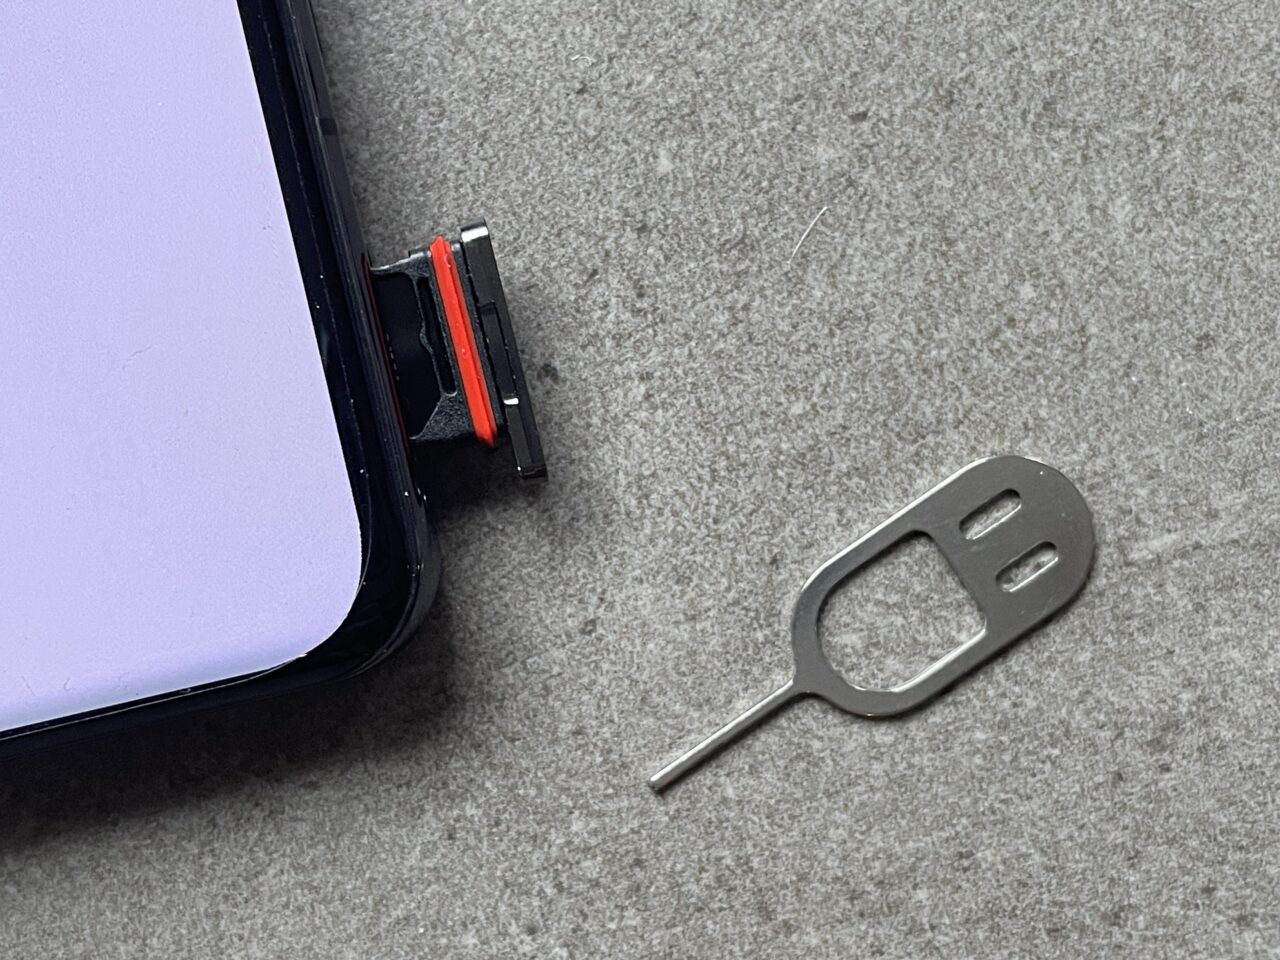 Zdjęcie karty SIM na szarej tkaninie obok metalowego narzędzia do otwierania tacki karty SIM i częściowo widocznego czarnego smartfona z fioletowym ekranem.